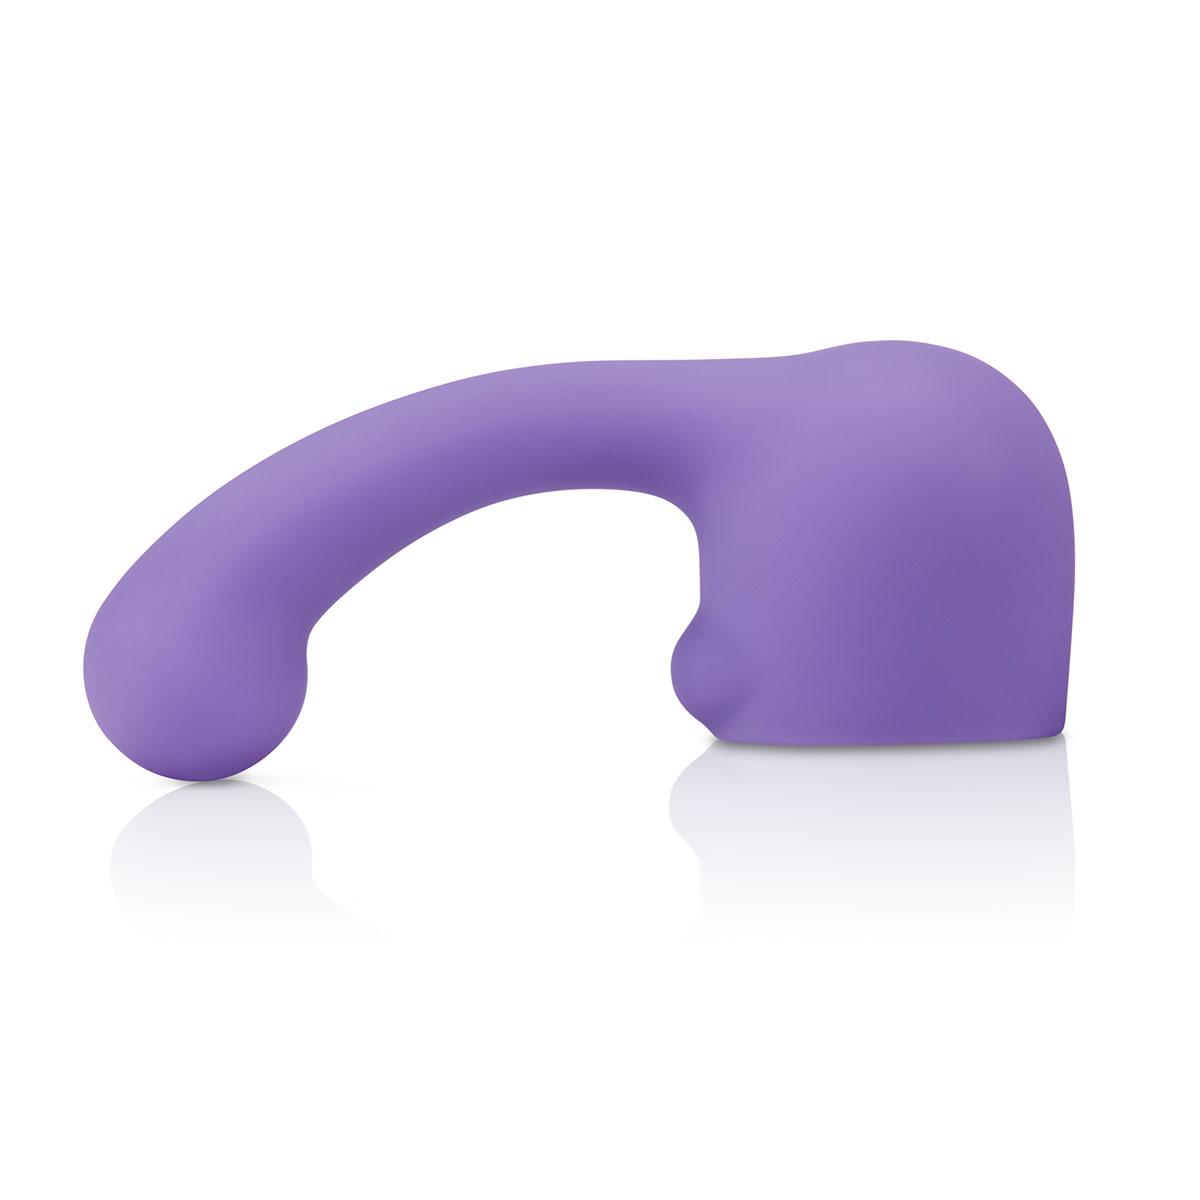 Фиолетовая утяжеленная насадка CURVE для массажера Le Wand-4083